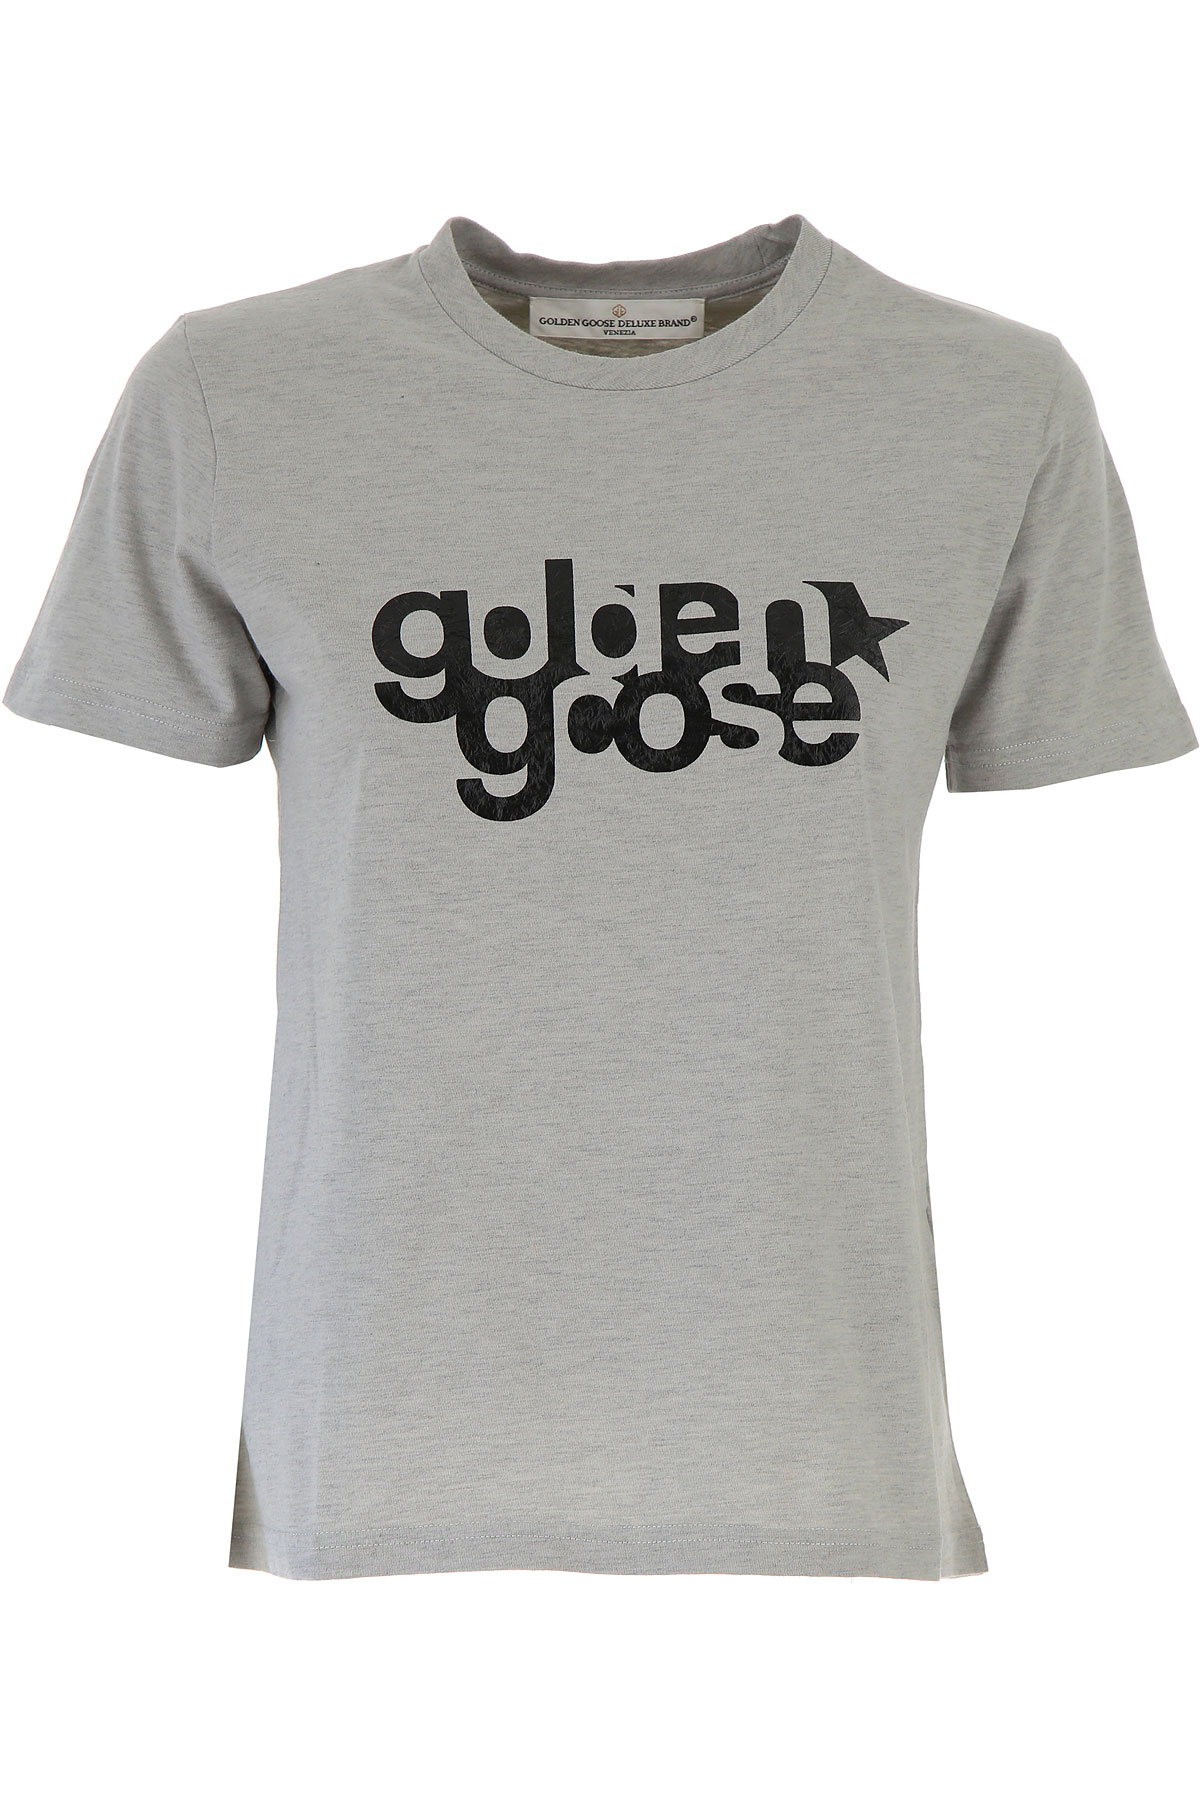 Golden Goose T-shirt Femme , Gris clair, Coton, 2017, 38 40 42 44